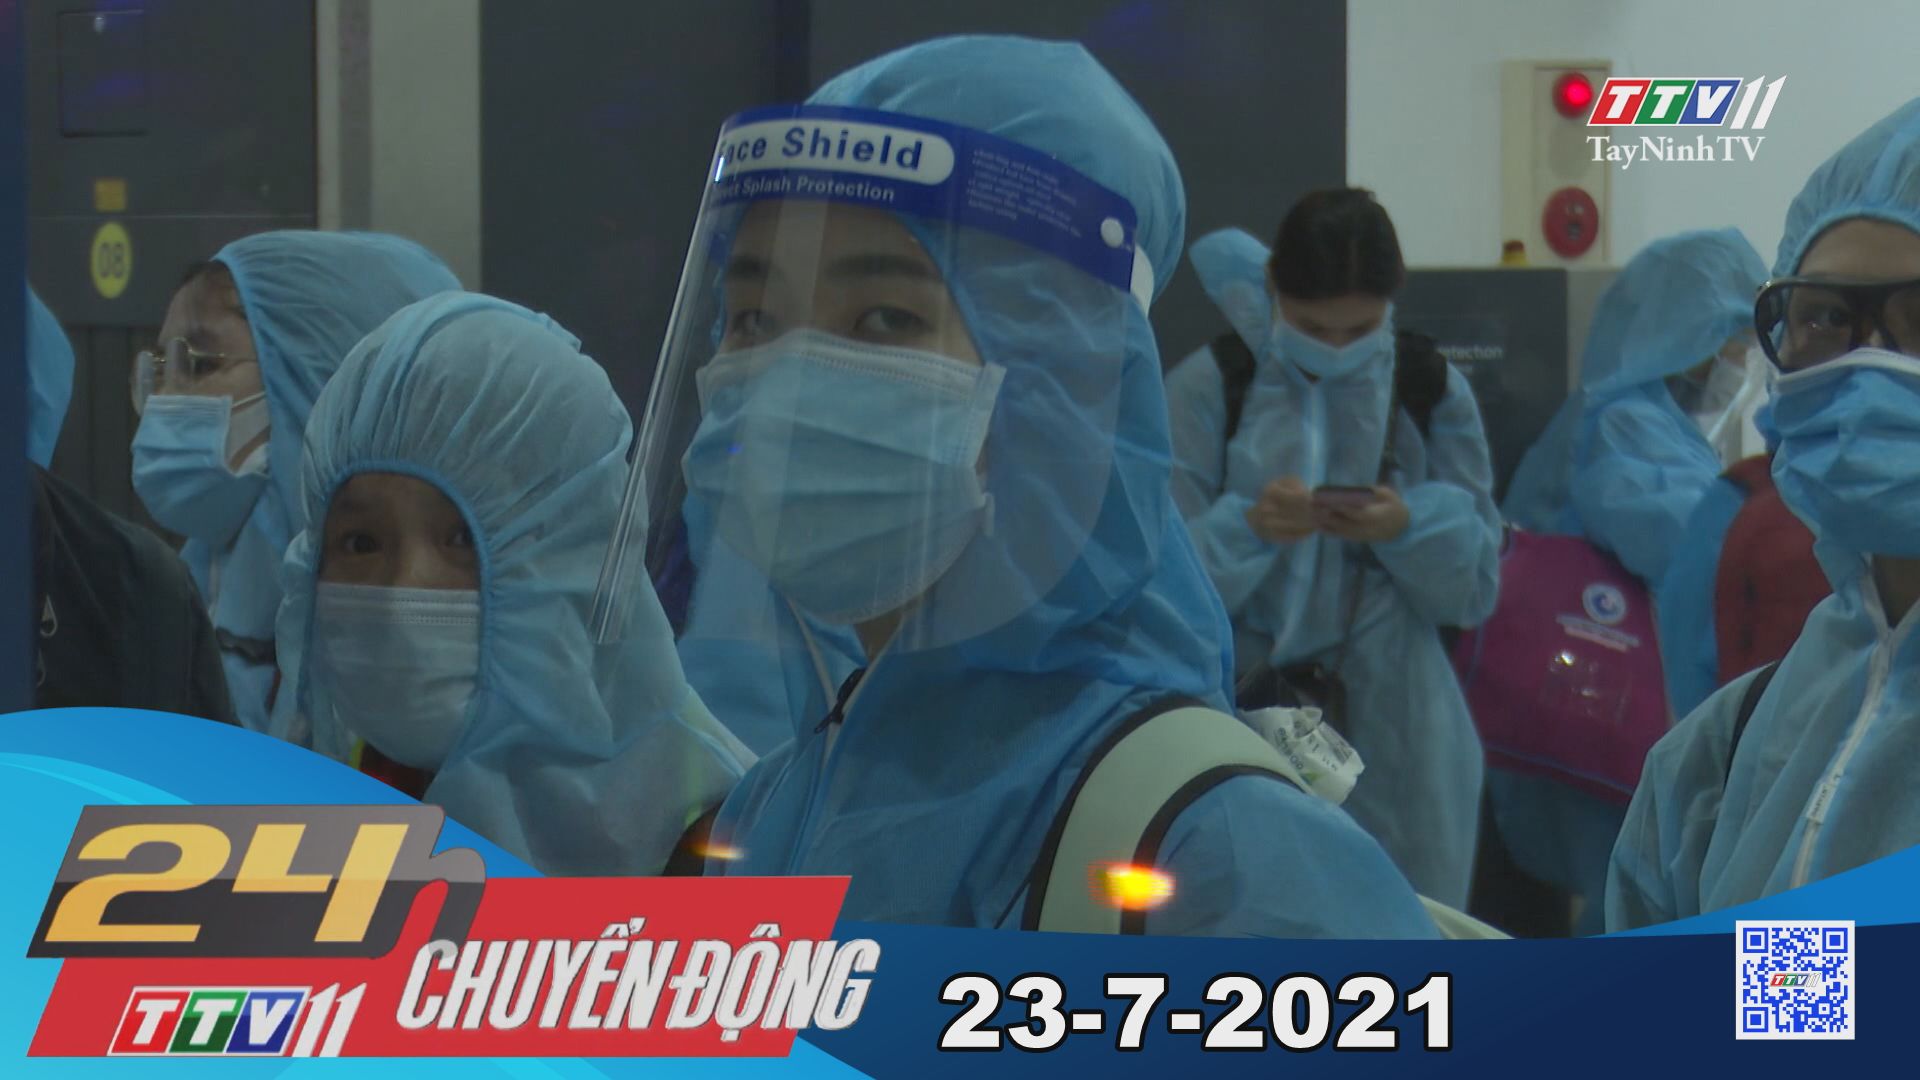 24h Chuyển động 23-7-2021 | Tin tức hôm nay | TayNinhTV